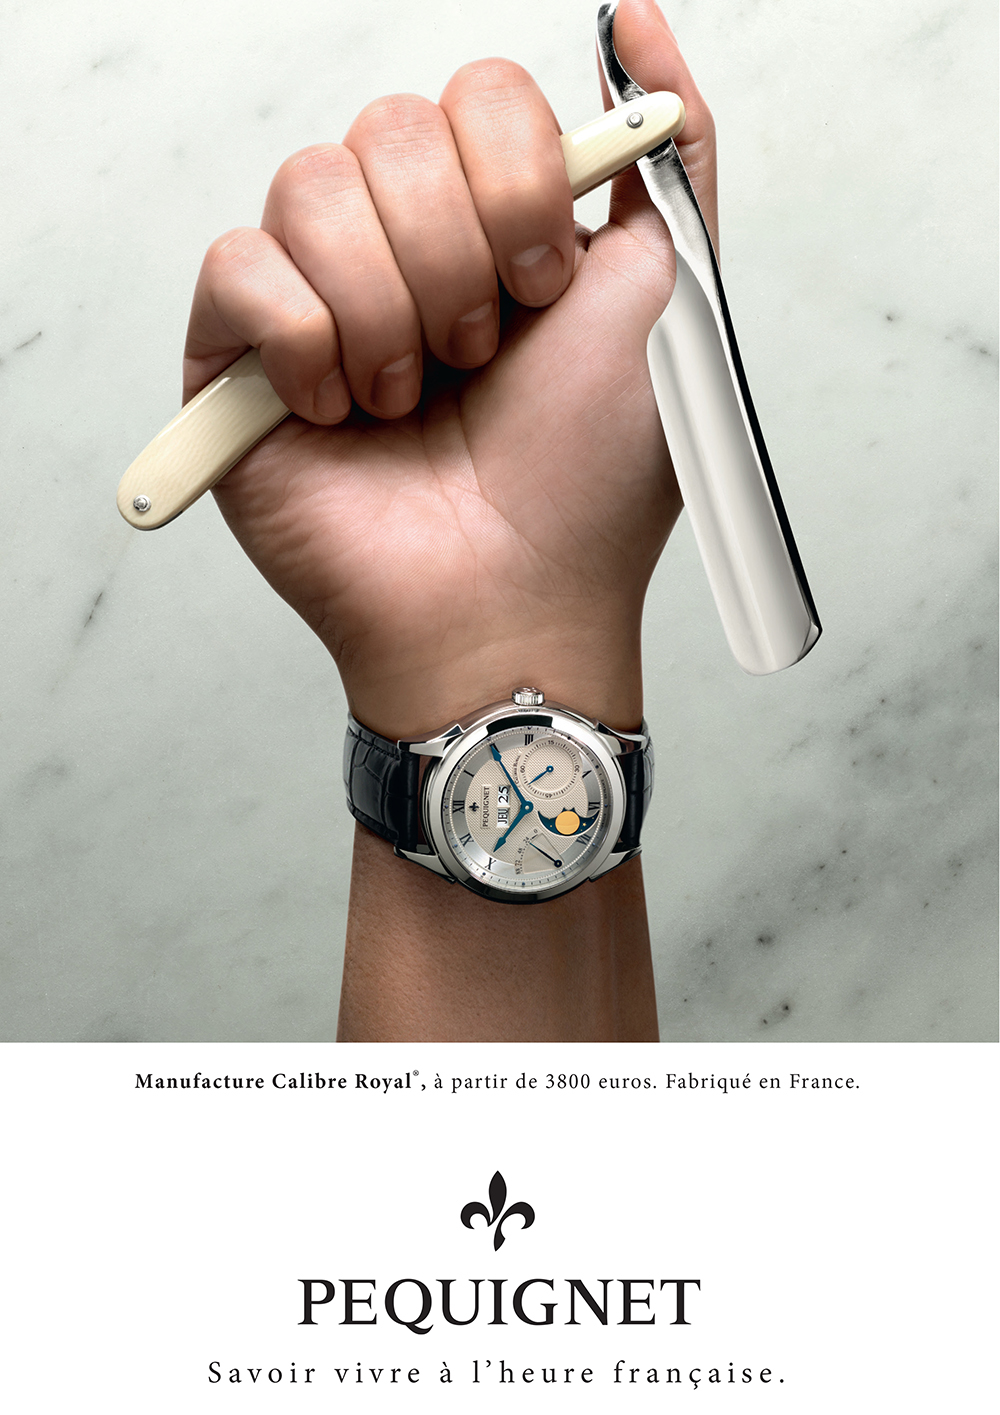 pequignet-montres-publicite-marketing-luxe-savoir-vivre-poignet-agence-buy-ideas-2015-3